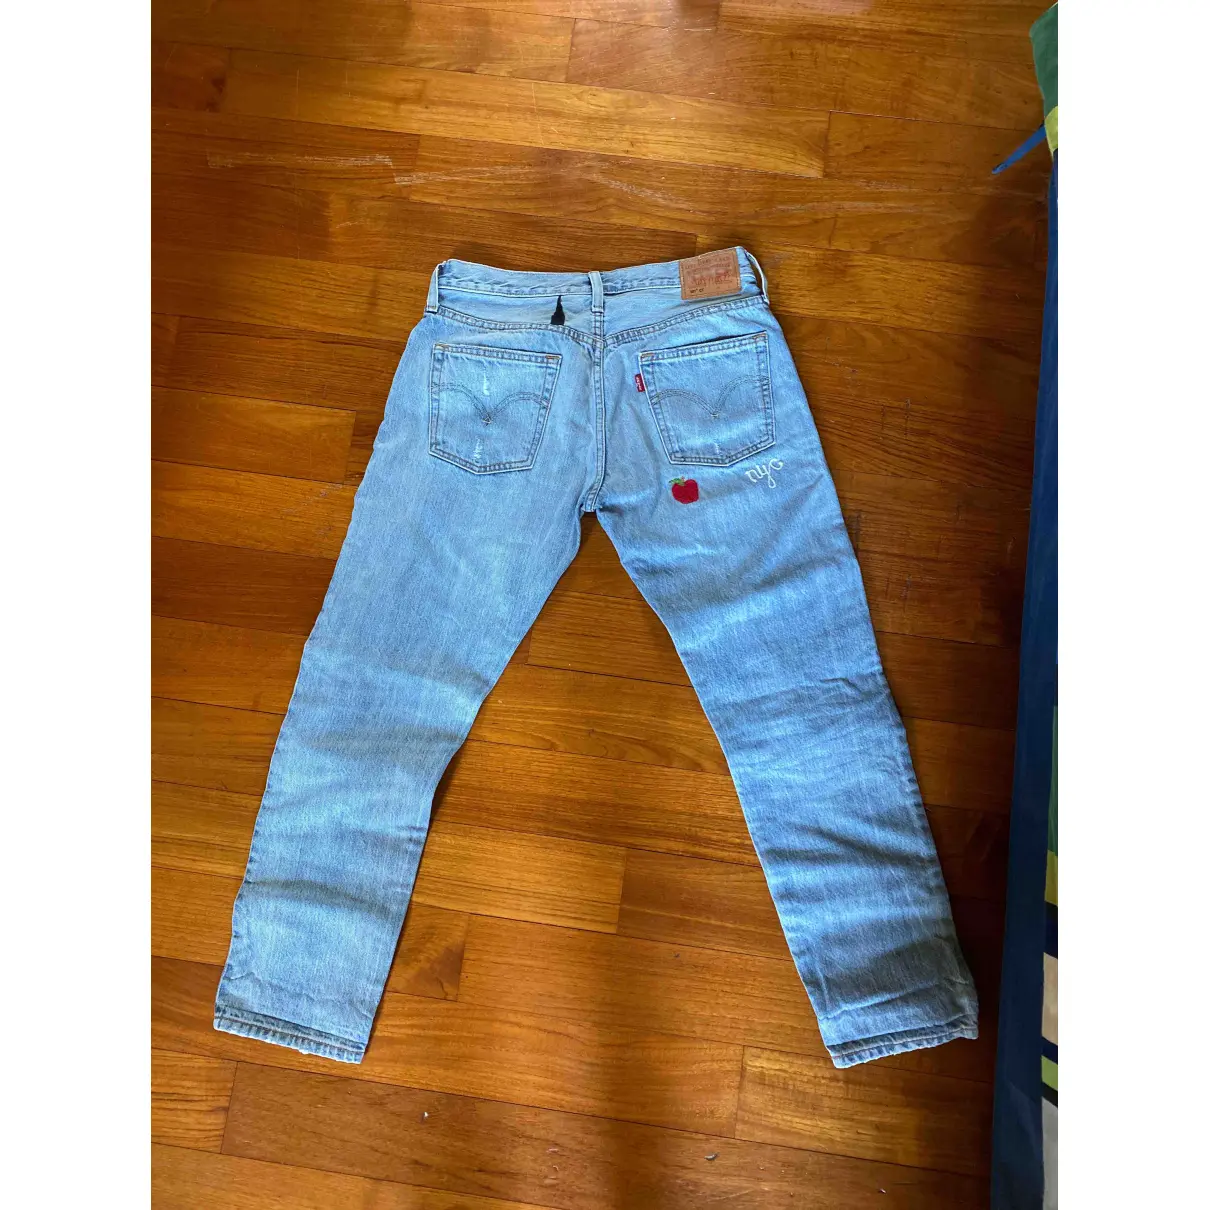 Buy Levi's Jeans online